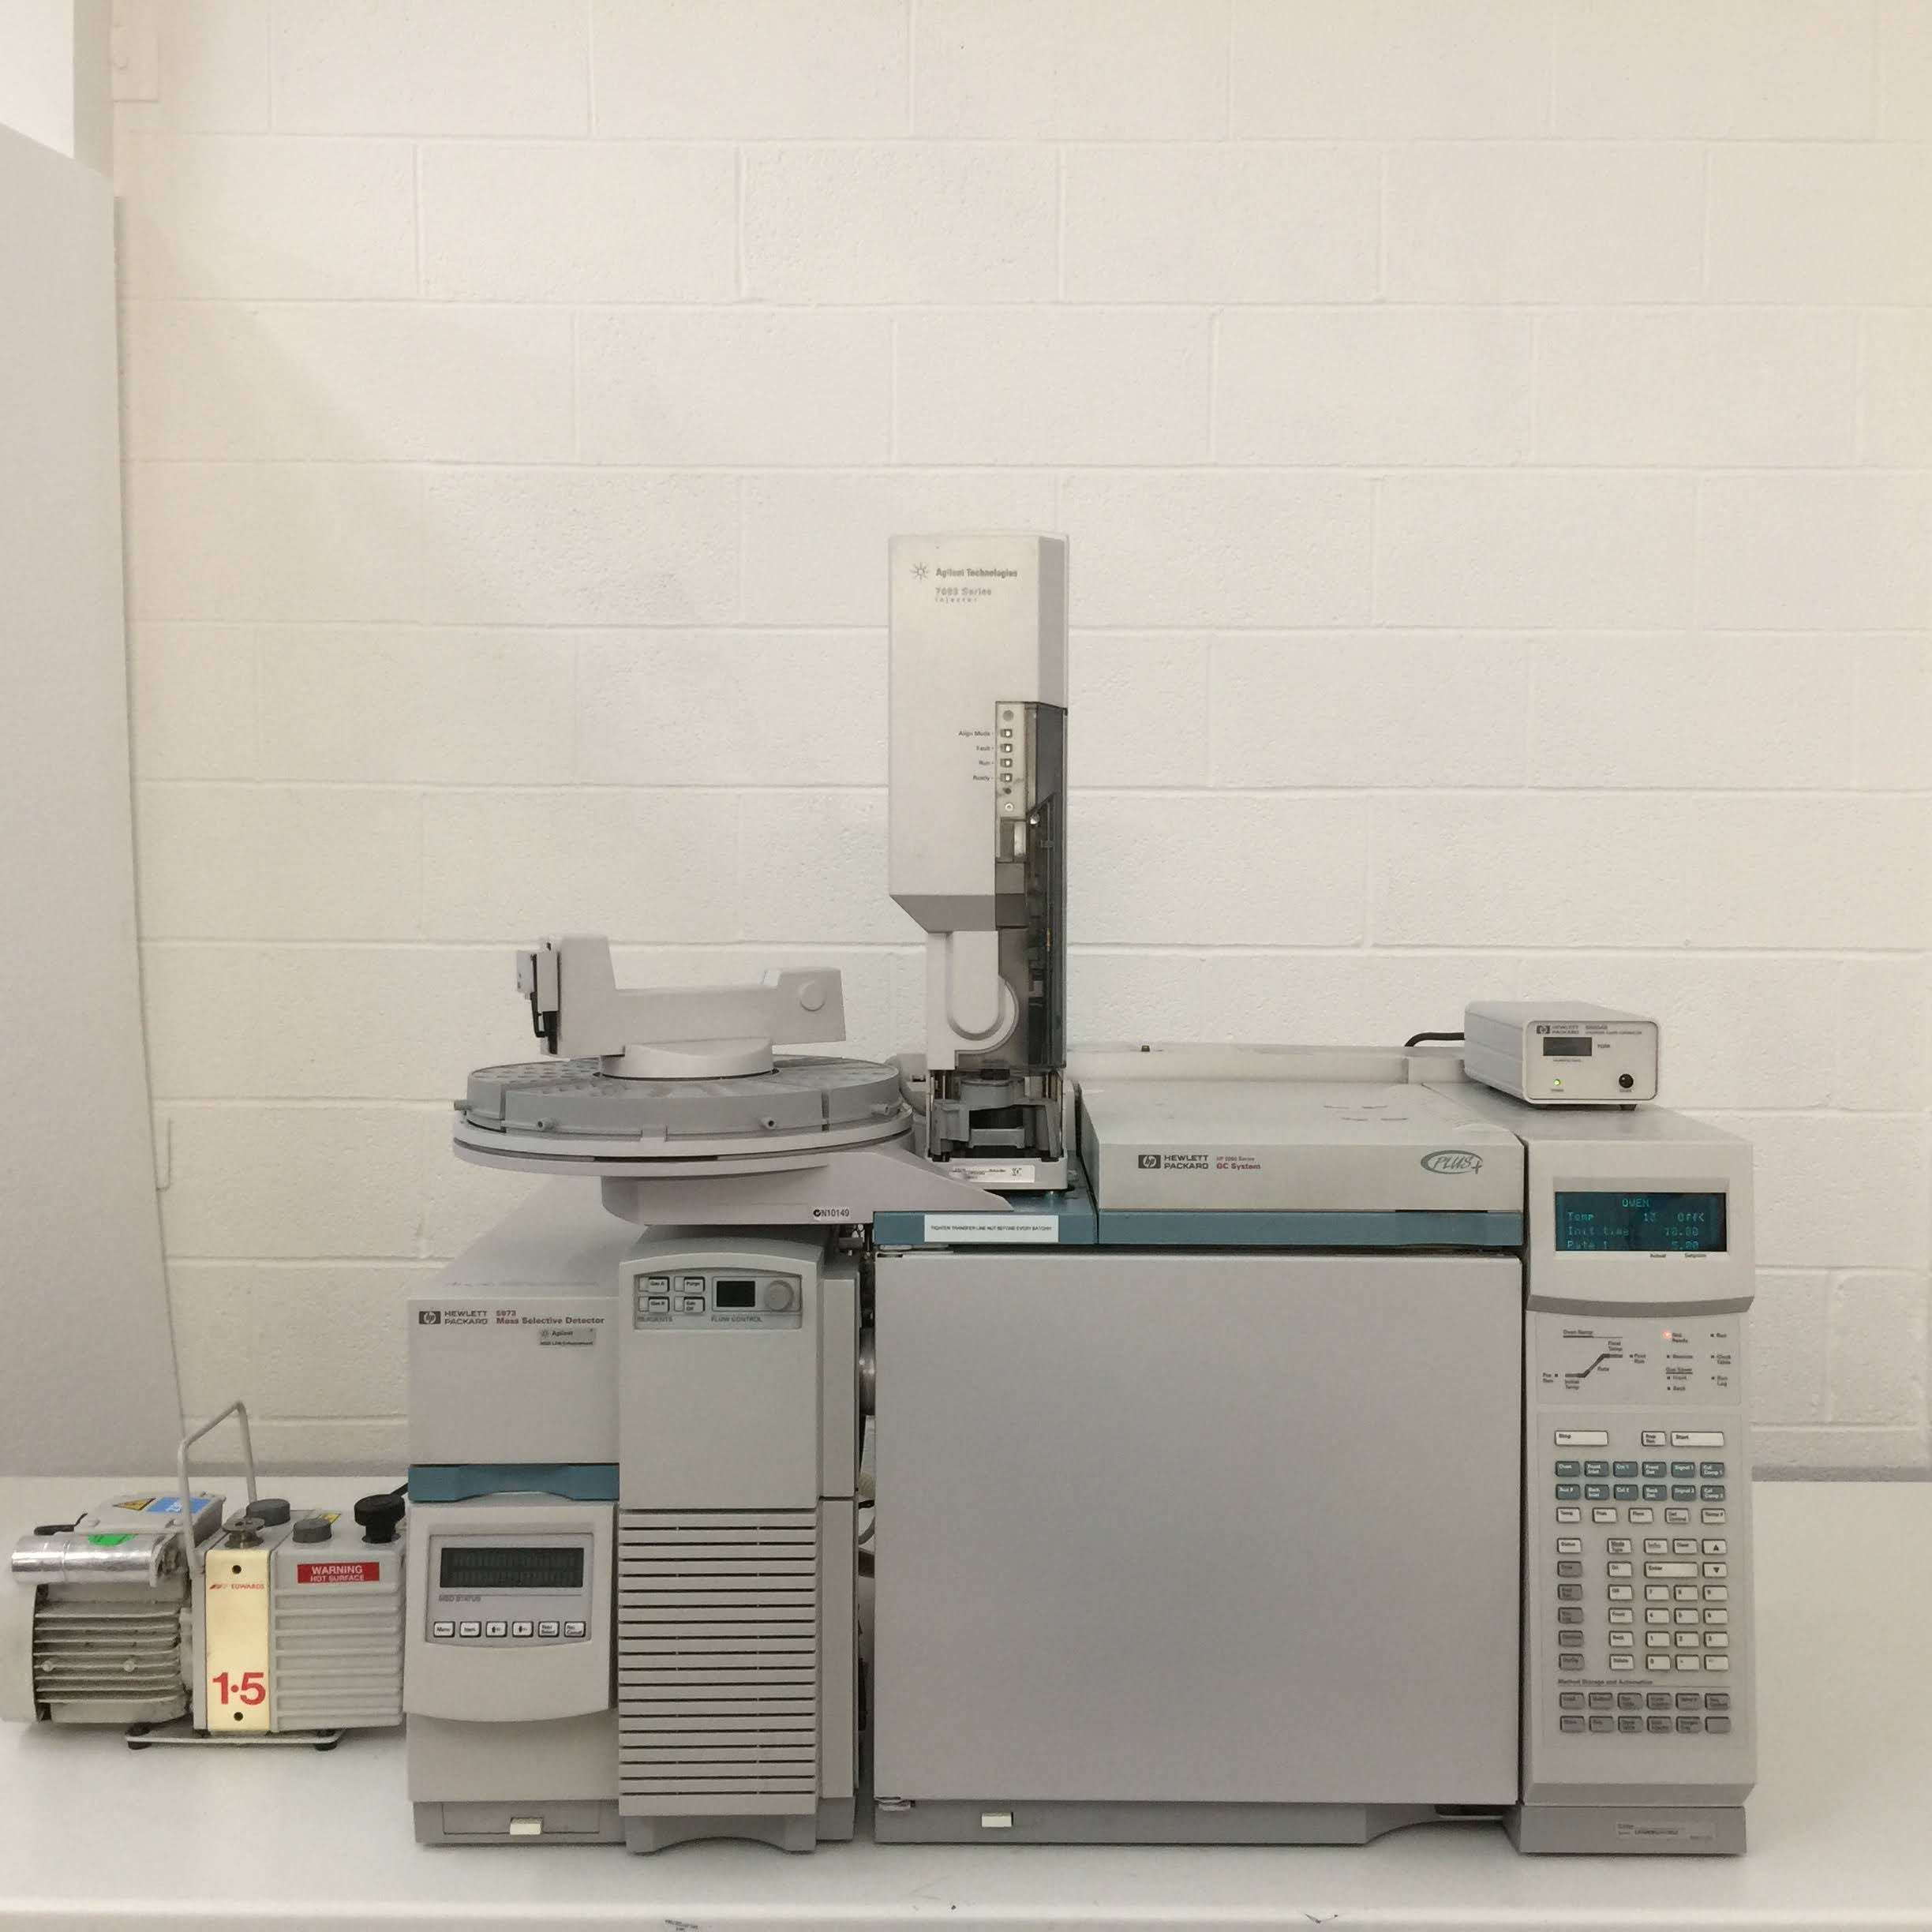 安捷伦HP 6890系列气相色谱仪、5973质量选择检测器和7683系列注射器